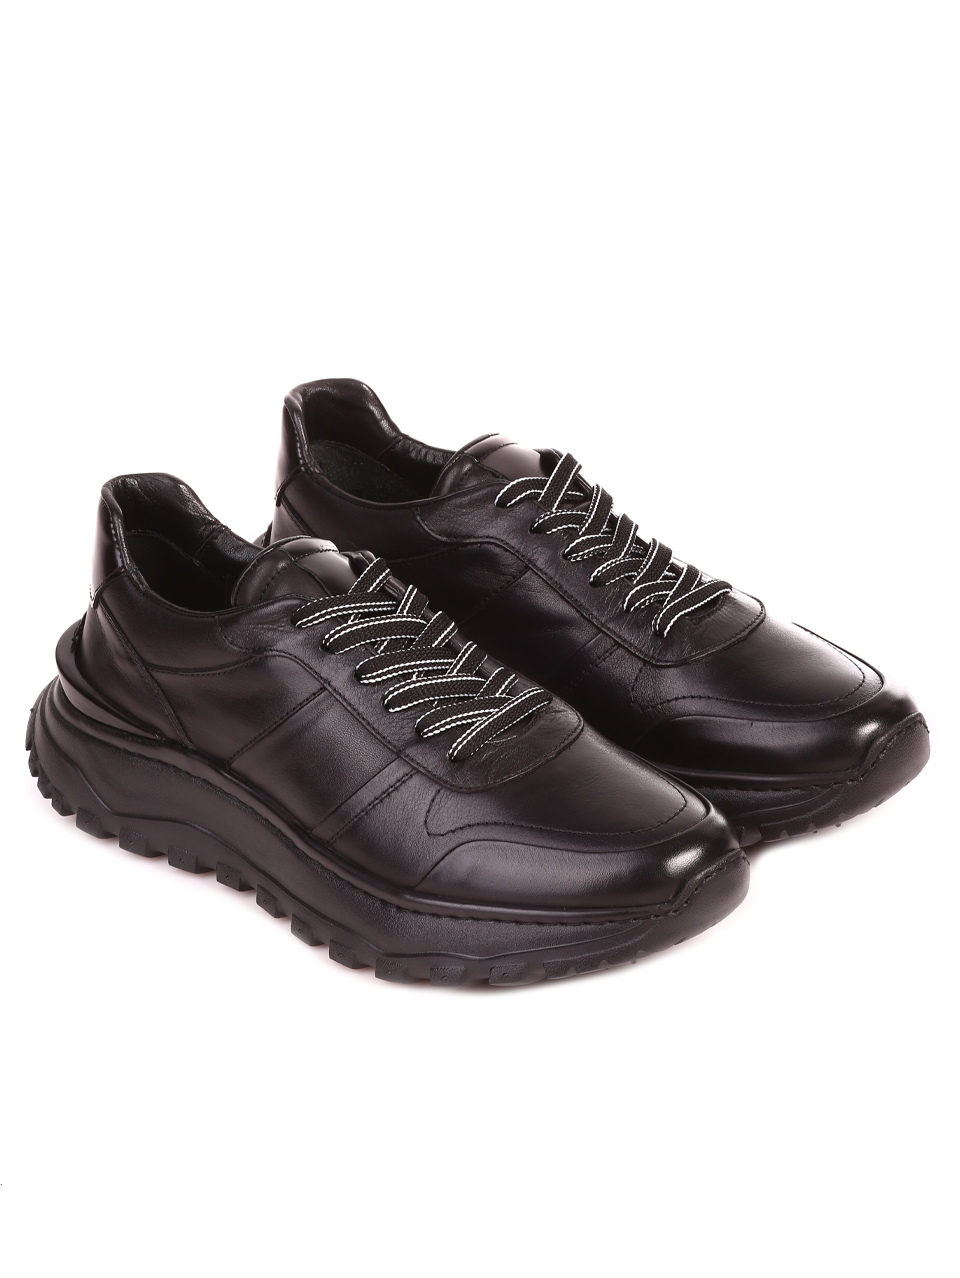 Eжедневни мъжки обувки от естественакожа 152-19202 S-3 all black